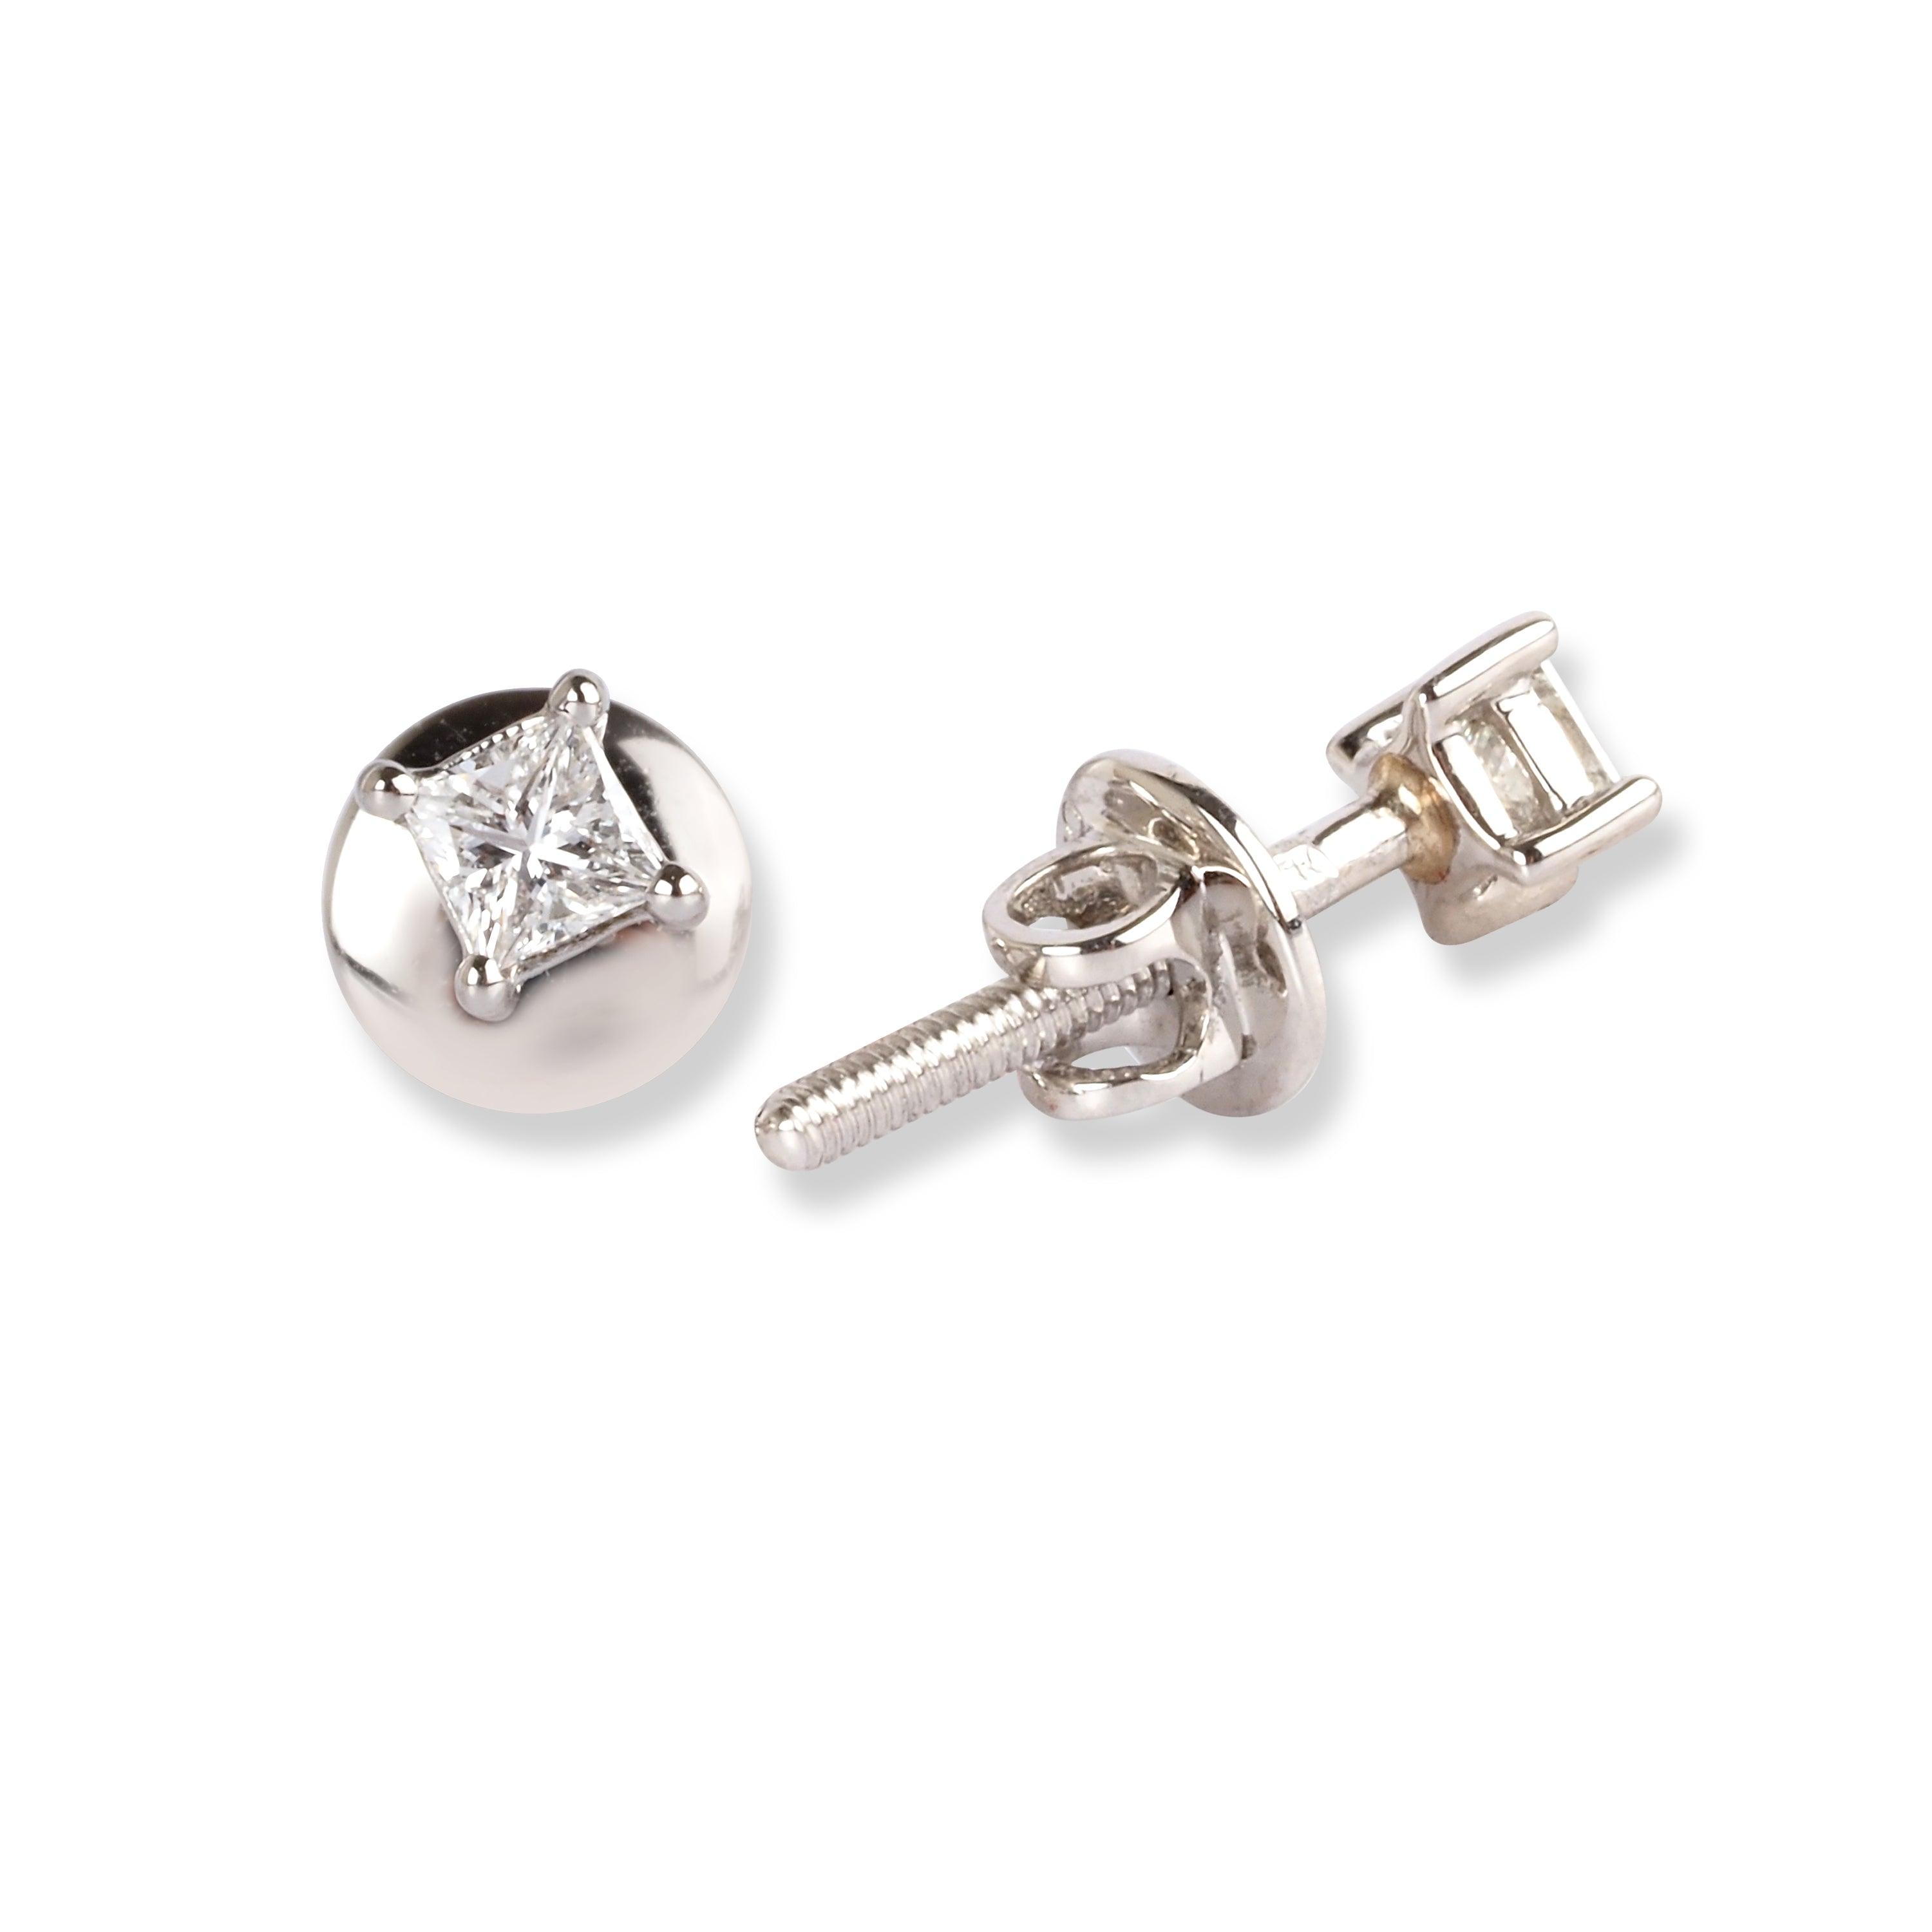 Platinum Diamond Stud Earrings E-7943 - Minar Jewellers